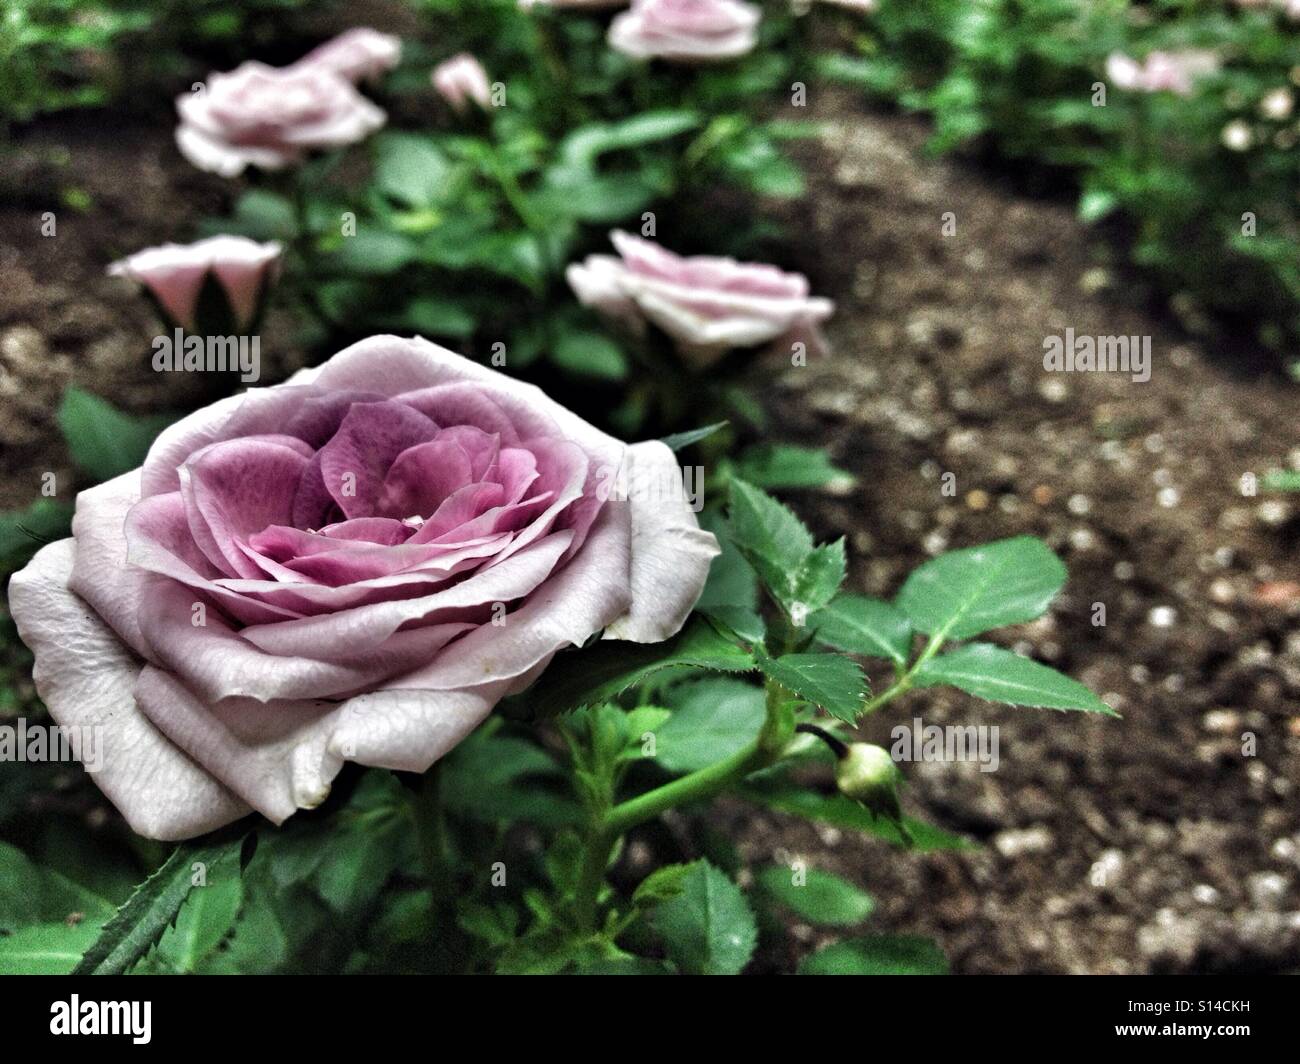 Rosa rosa con foglie verdi piantate nel terreno giardino con fiori sullo sfondo Foto Stock